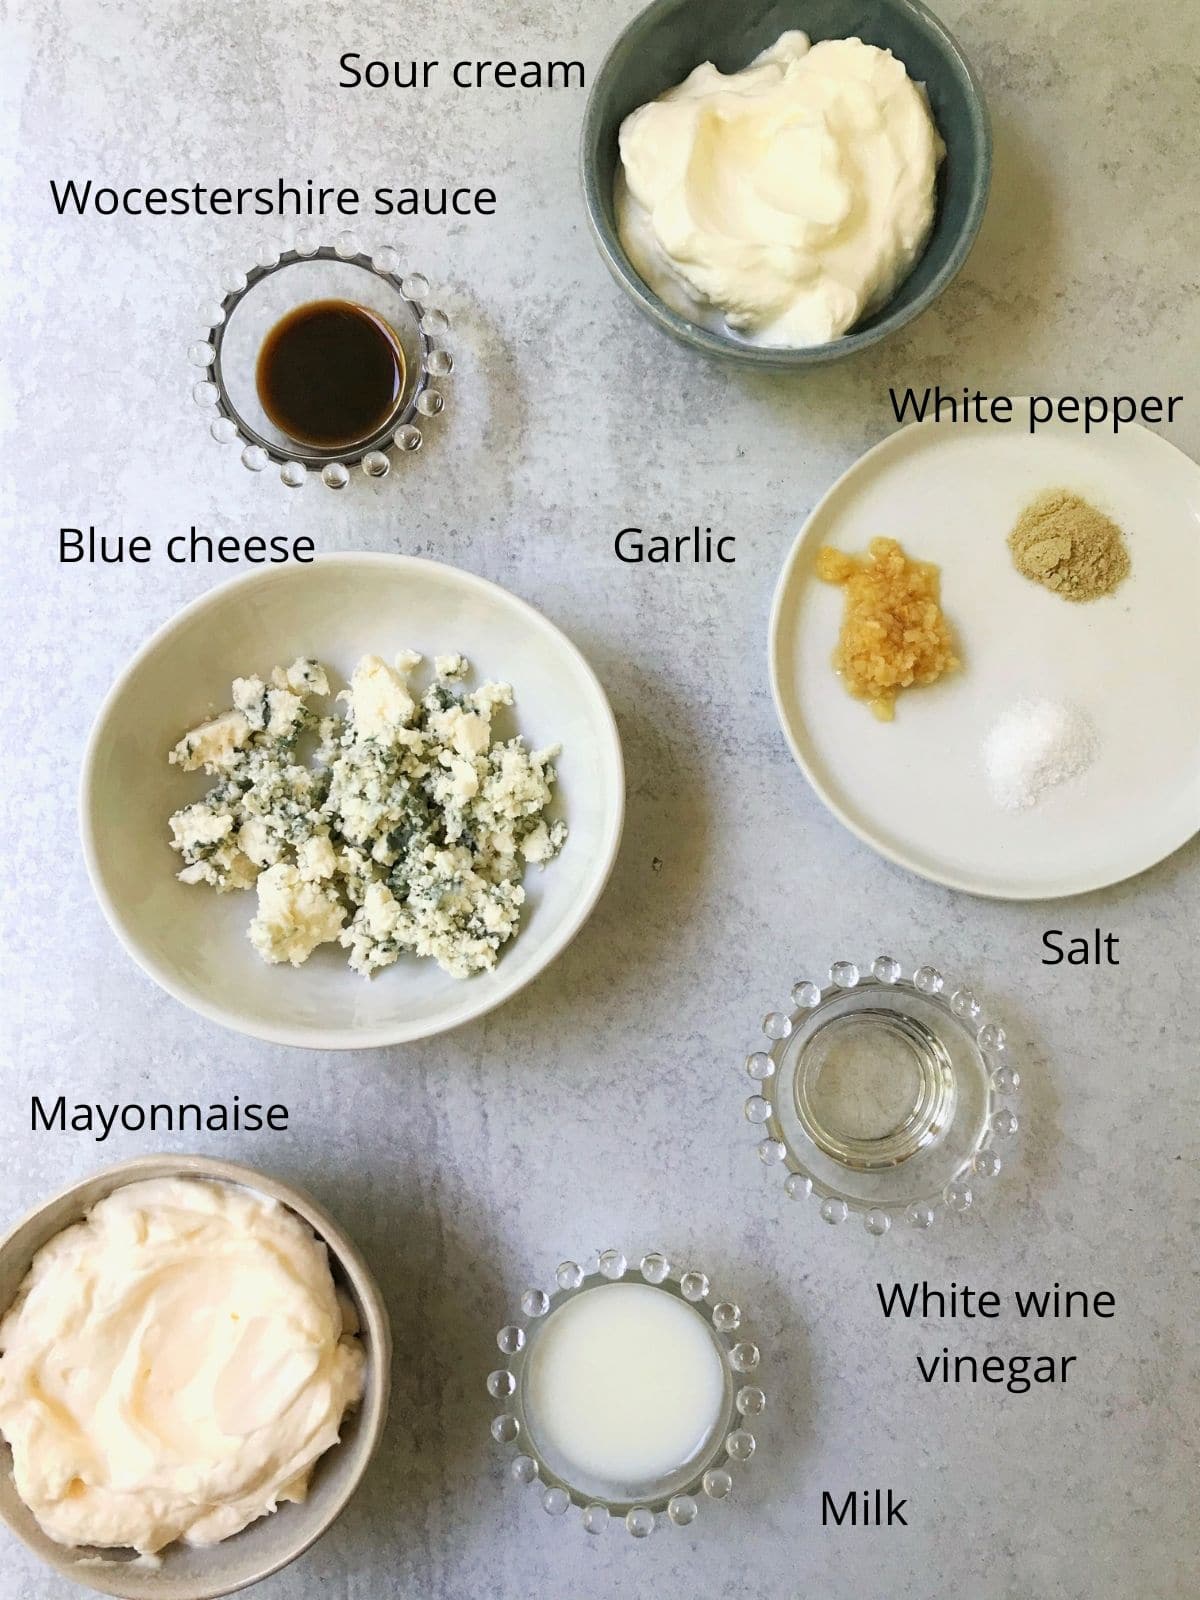 dressing ingredients - sour cream, mayo, blue cheese, worcestershire sauce, vinegar, milk, seasonings